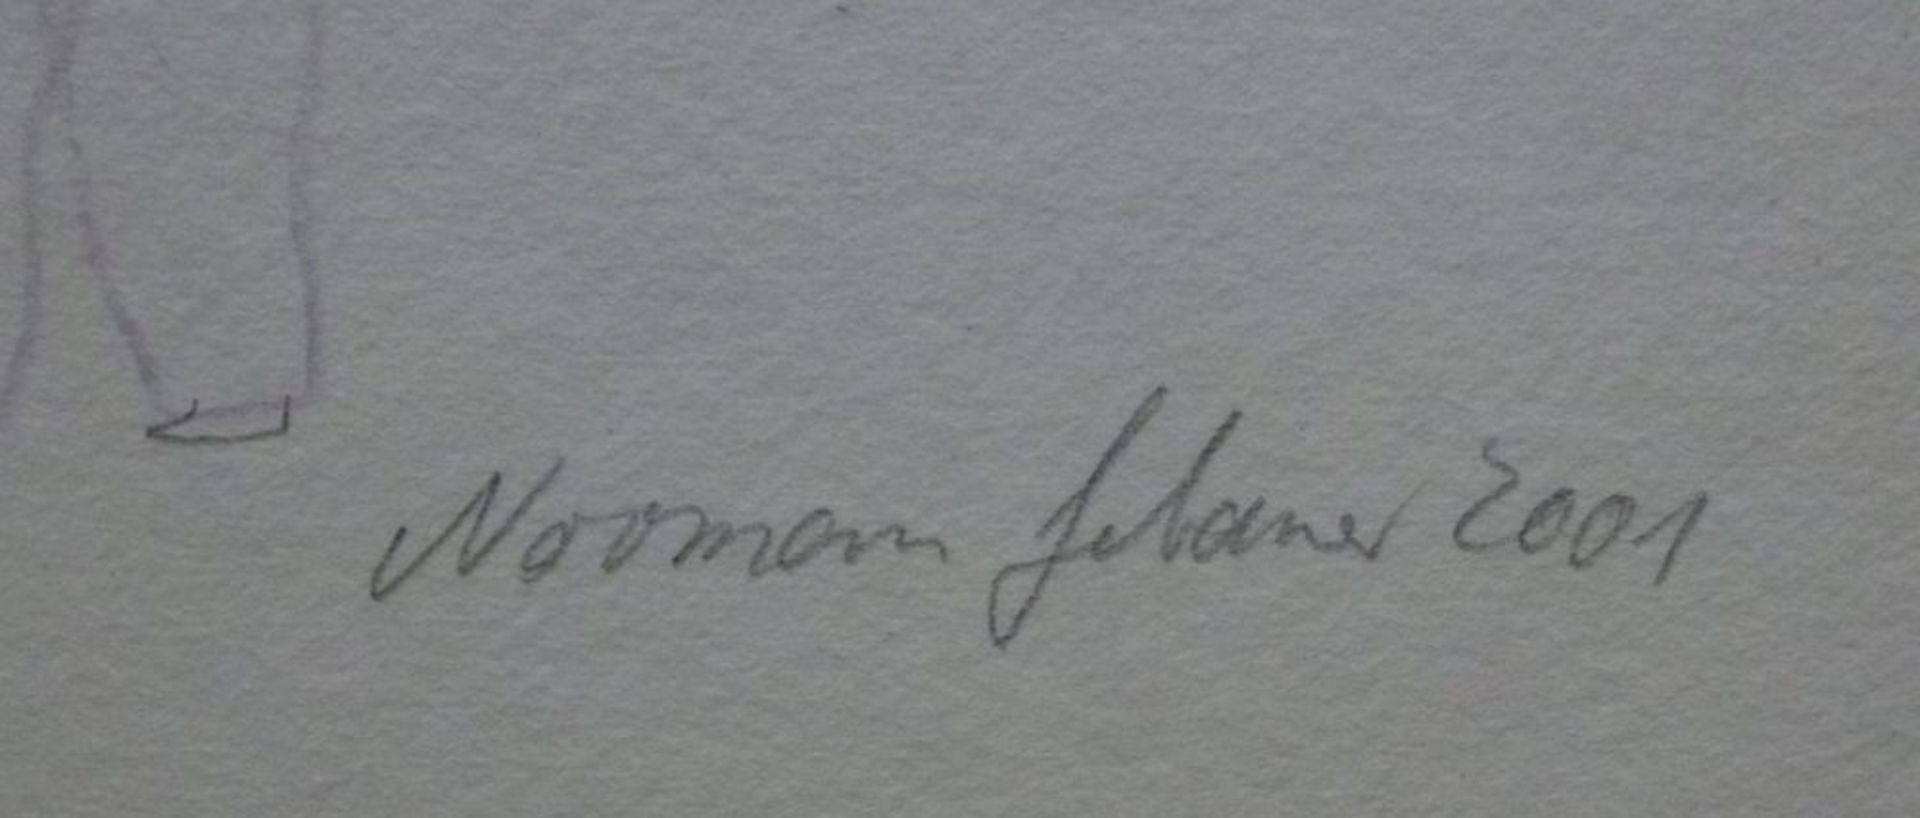 4 FarbradierungenNorman Gebauer, *1958Farbradierung tlw. m. aquarell. Bleistift-/Buntstiftzeichnung, - Bild 5 aus 5